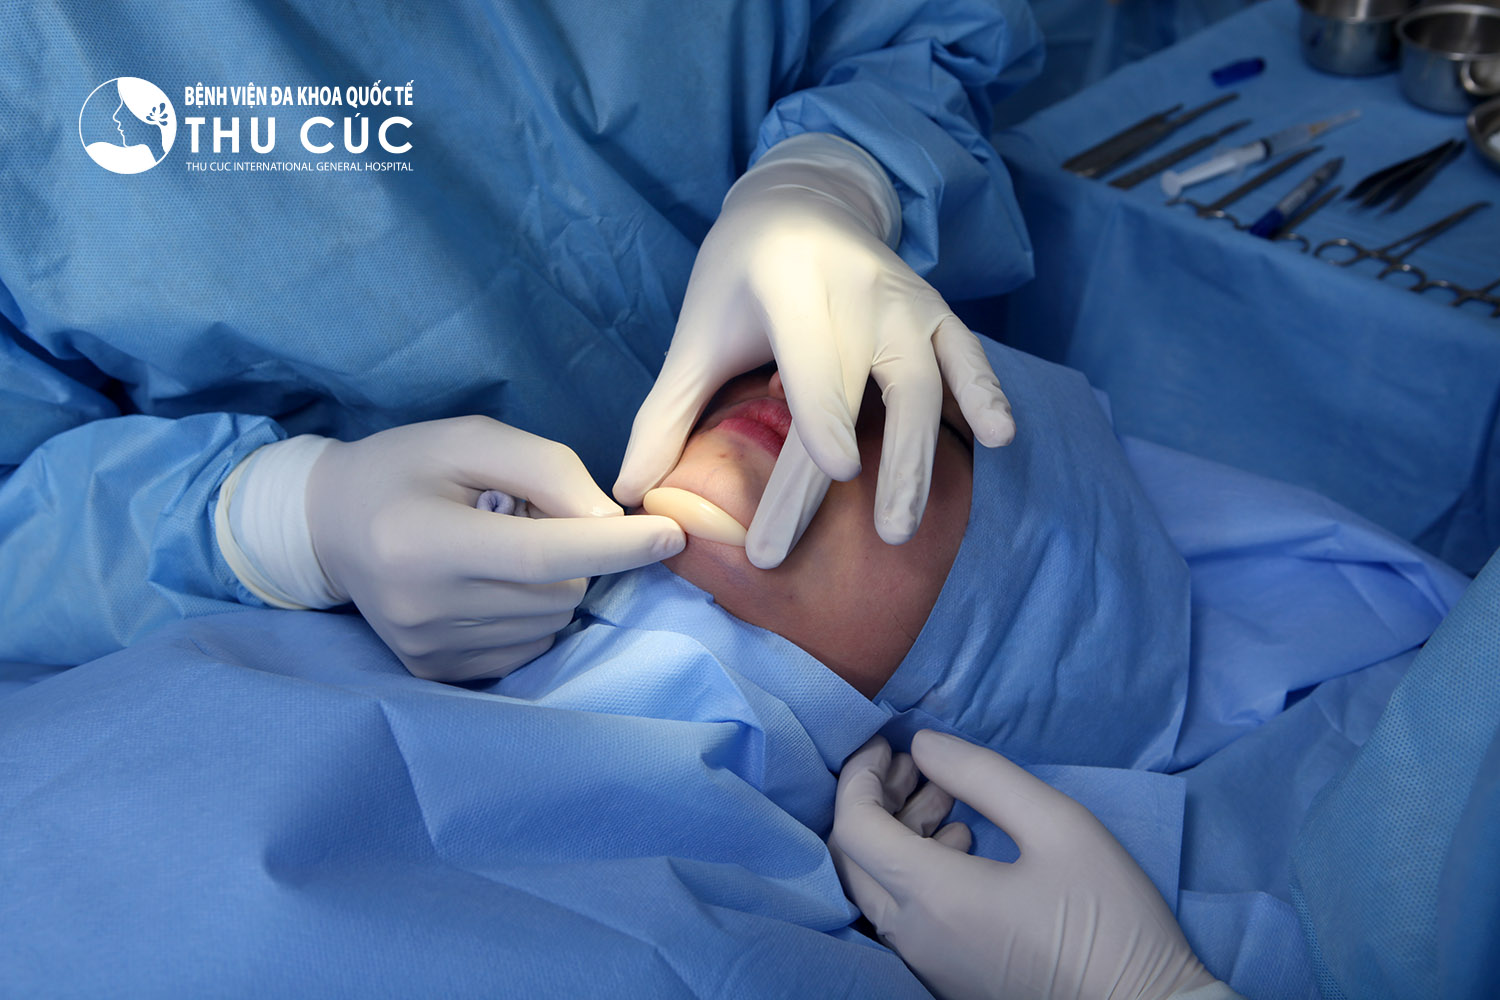 Toàn bộ quy trình phẫu thuật thẩm mỹ cằm tại Thu Cúc Sài Gòn đều được thực hiện theo đúng tiêu chuẩn an toàn của Bộ Y tế